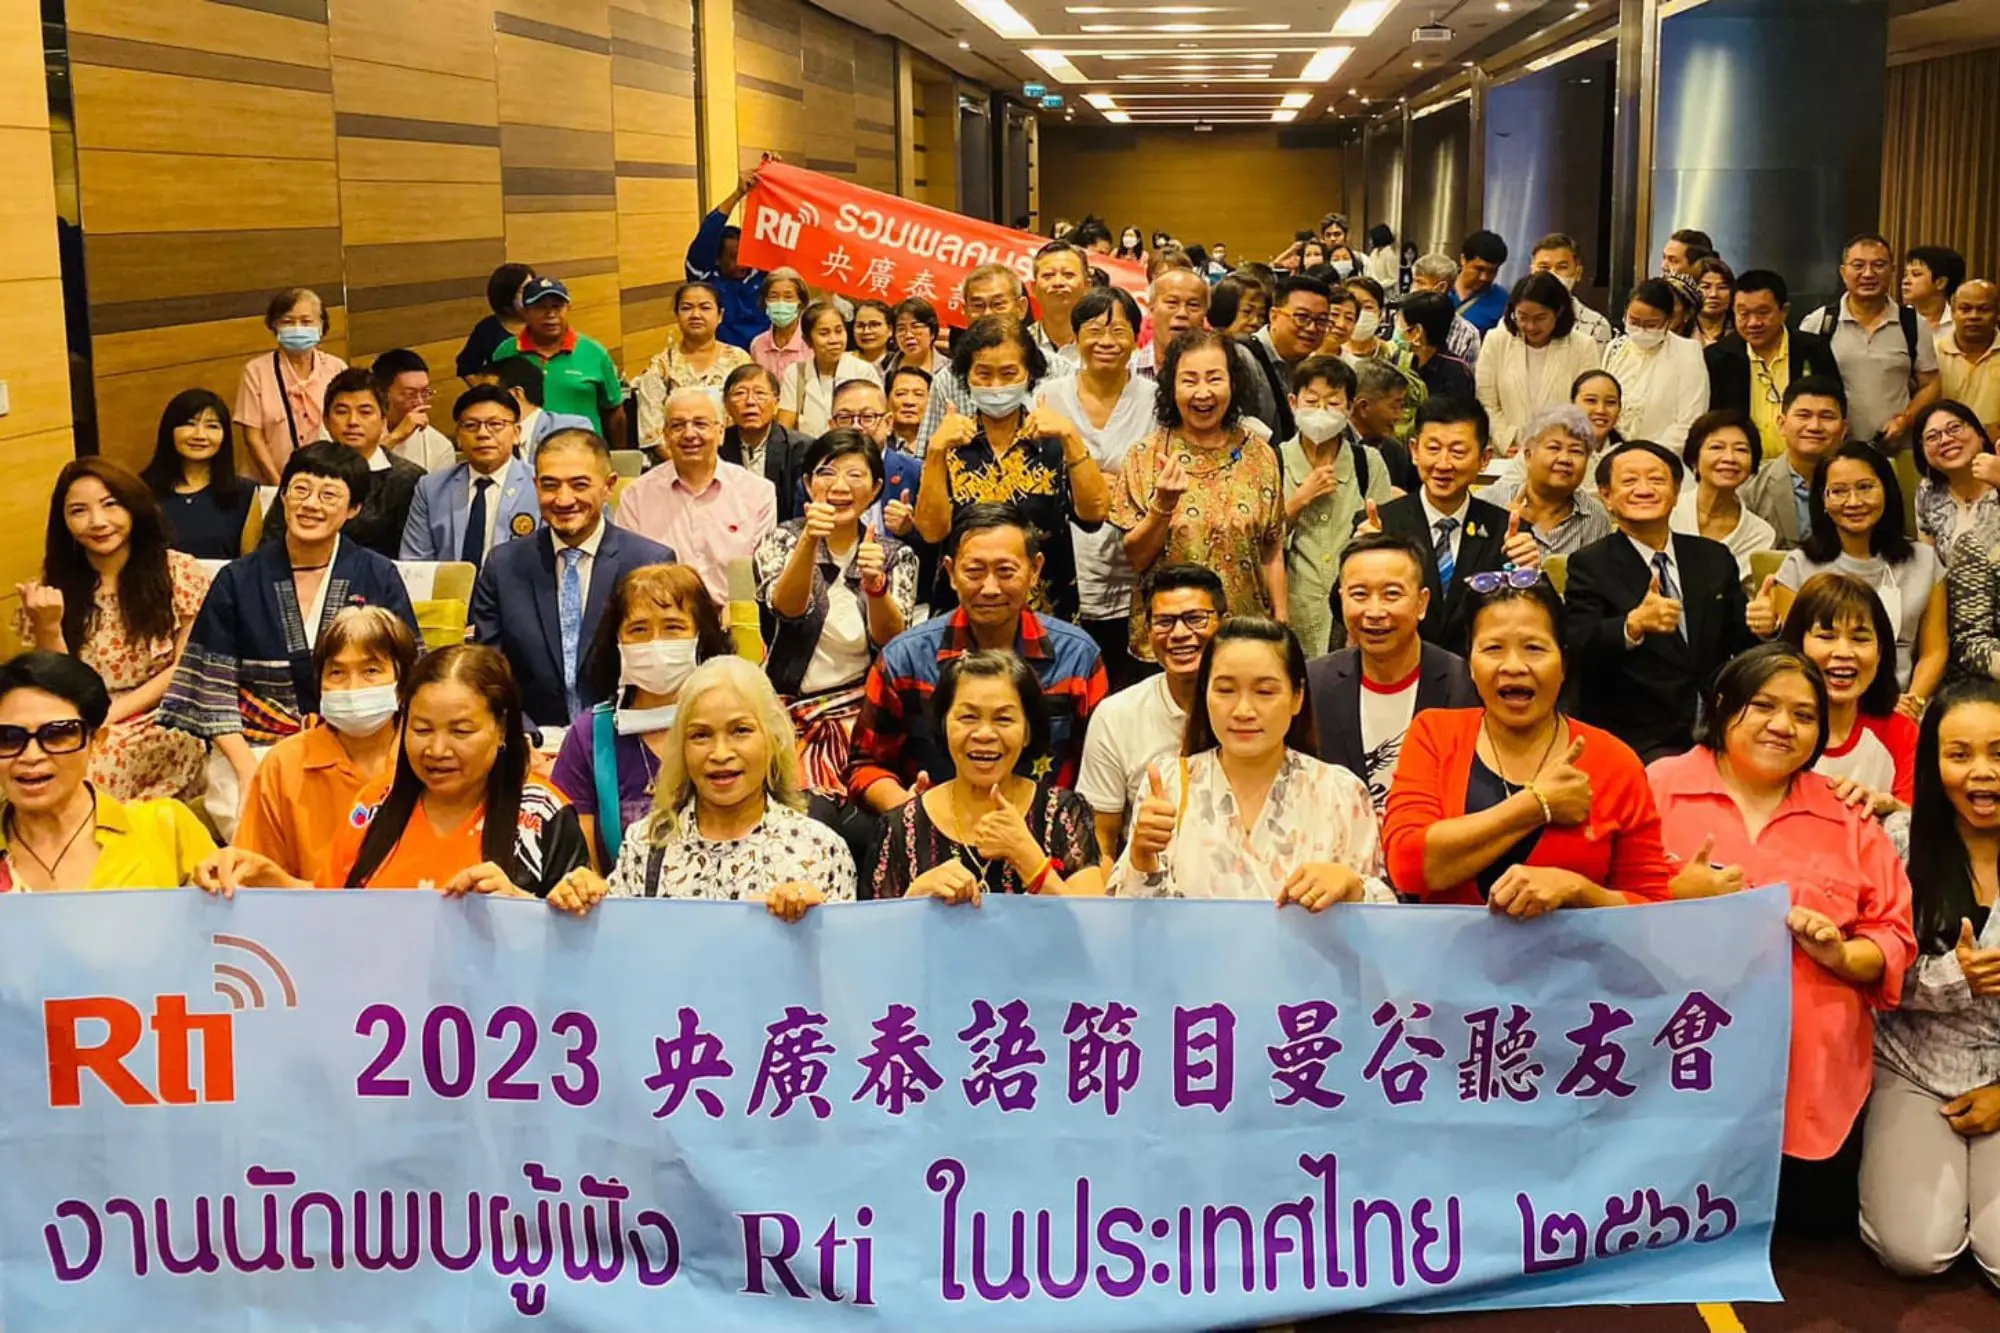 2023年央廣在泰國舉辦聽友會吸引120名聽眾出席（圖片來源：RTI Events央廣情報讚FB）